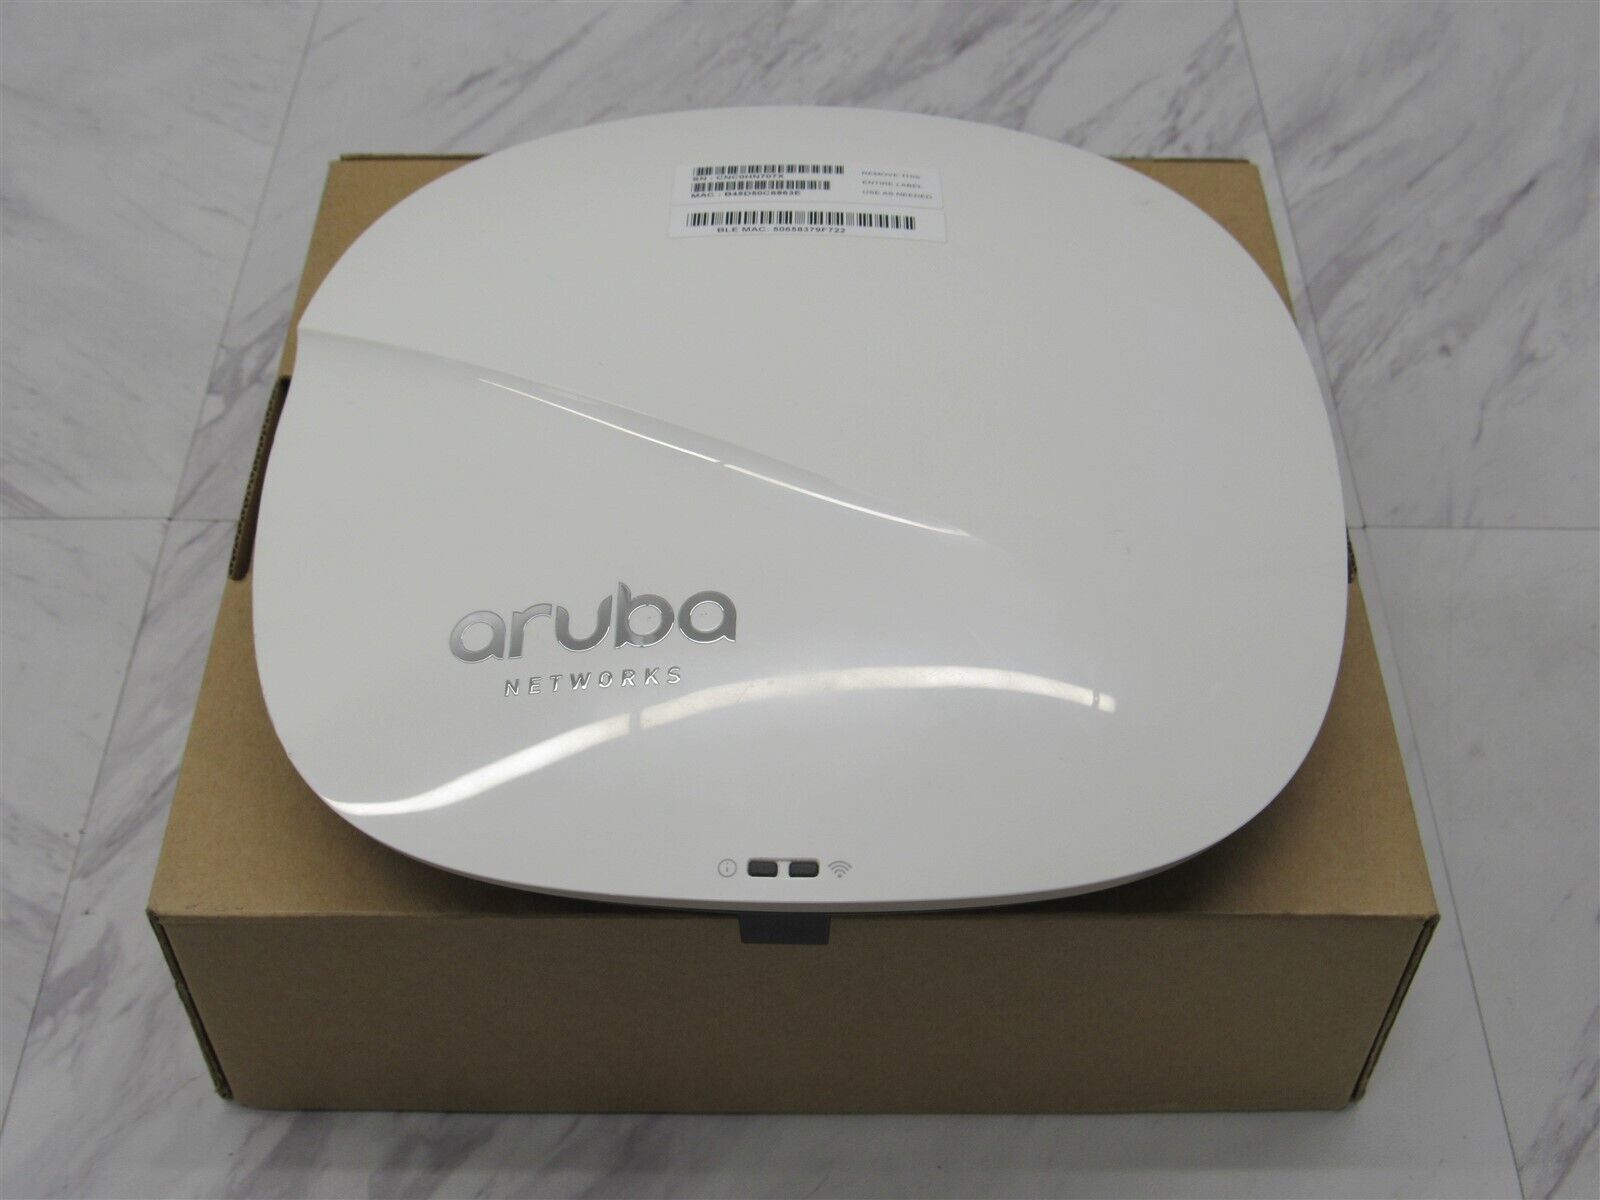 Tìm hiểu về Wifi chuyên dụng Aruba Giải pháp tối ưu cho mạng kết nối không dây